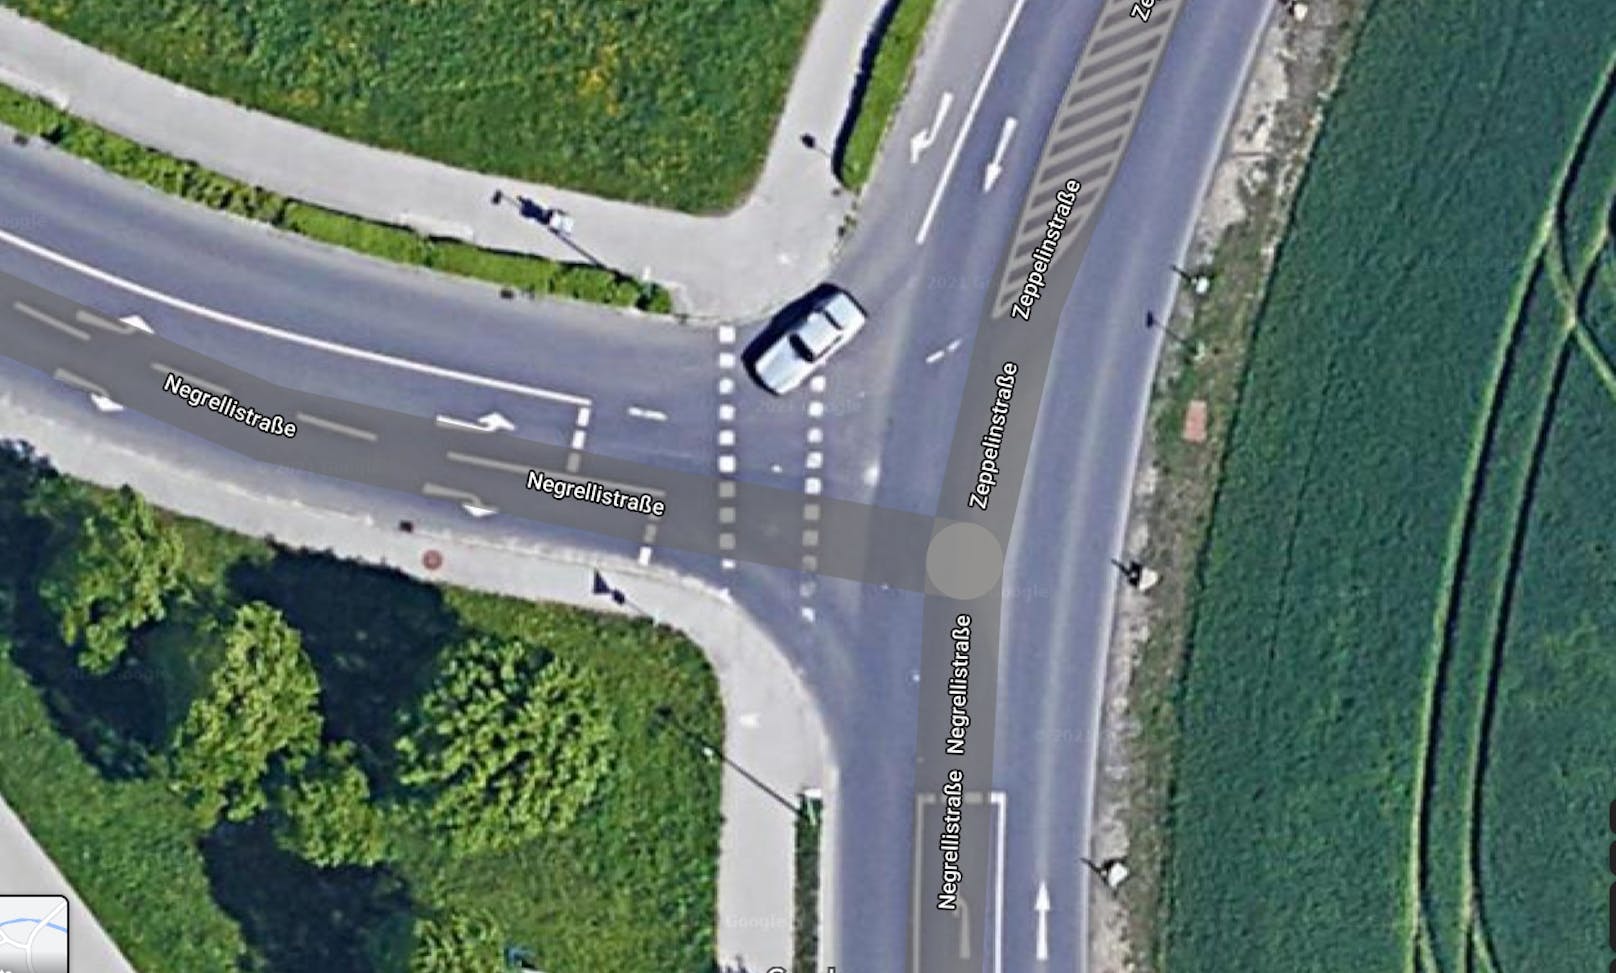 So sah die Kreuzung vor Beginn der Umbauarbeiten auf einem Satellitenbild aus.